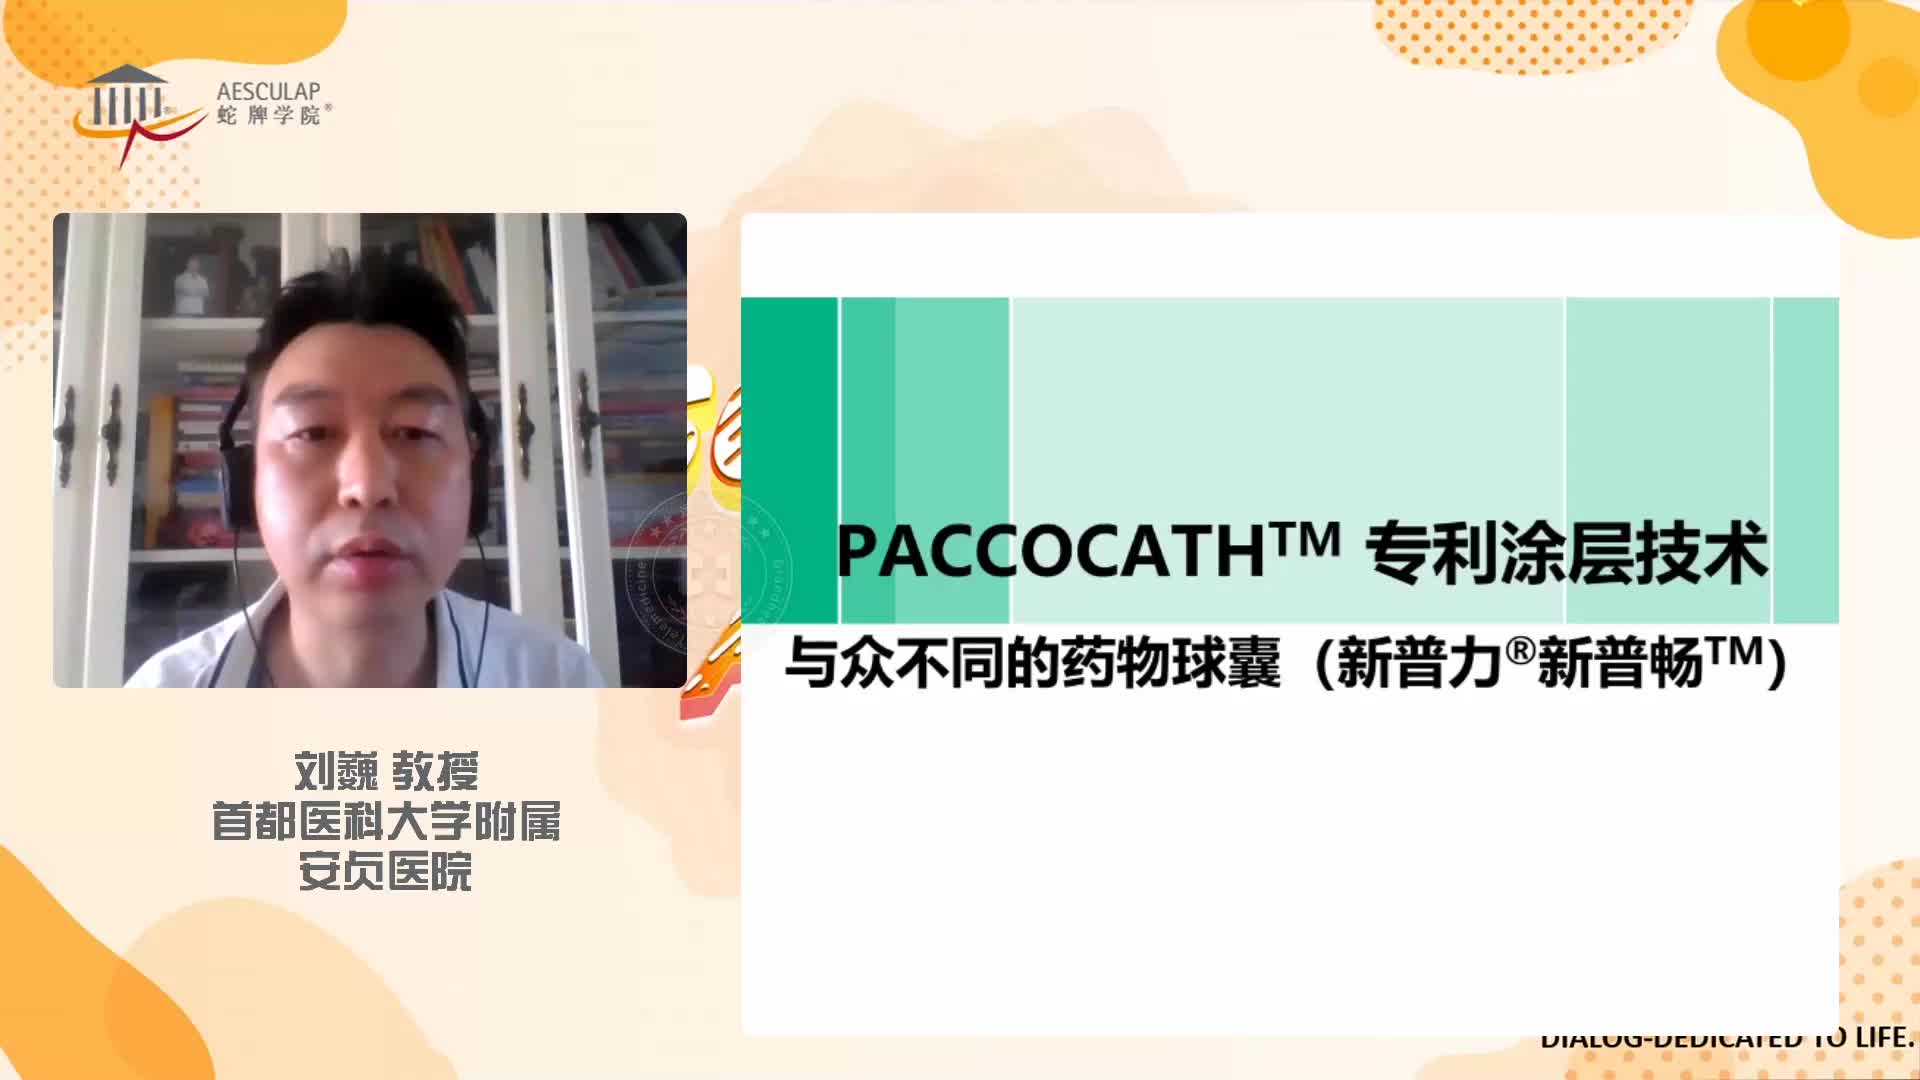 刘巍-PACCOCATH专利涂层 与众不同的药物球囊